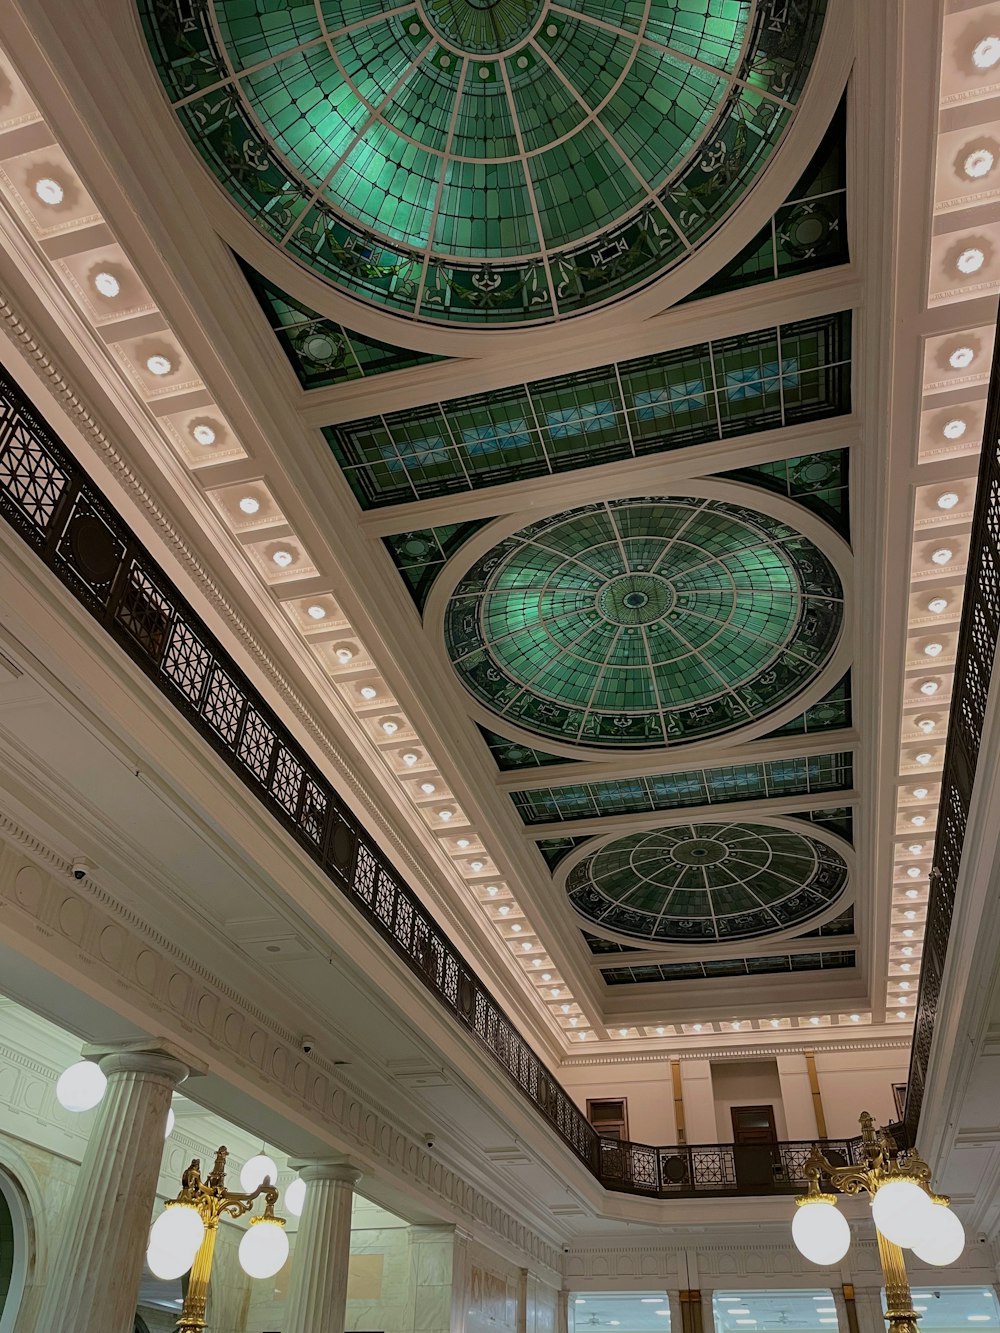 녹색 유리 돔이 있는 큰 건물의 천장